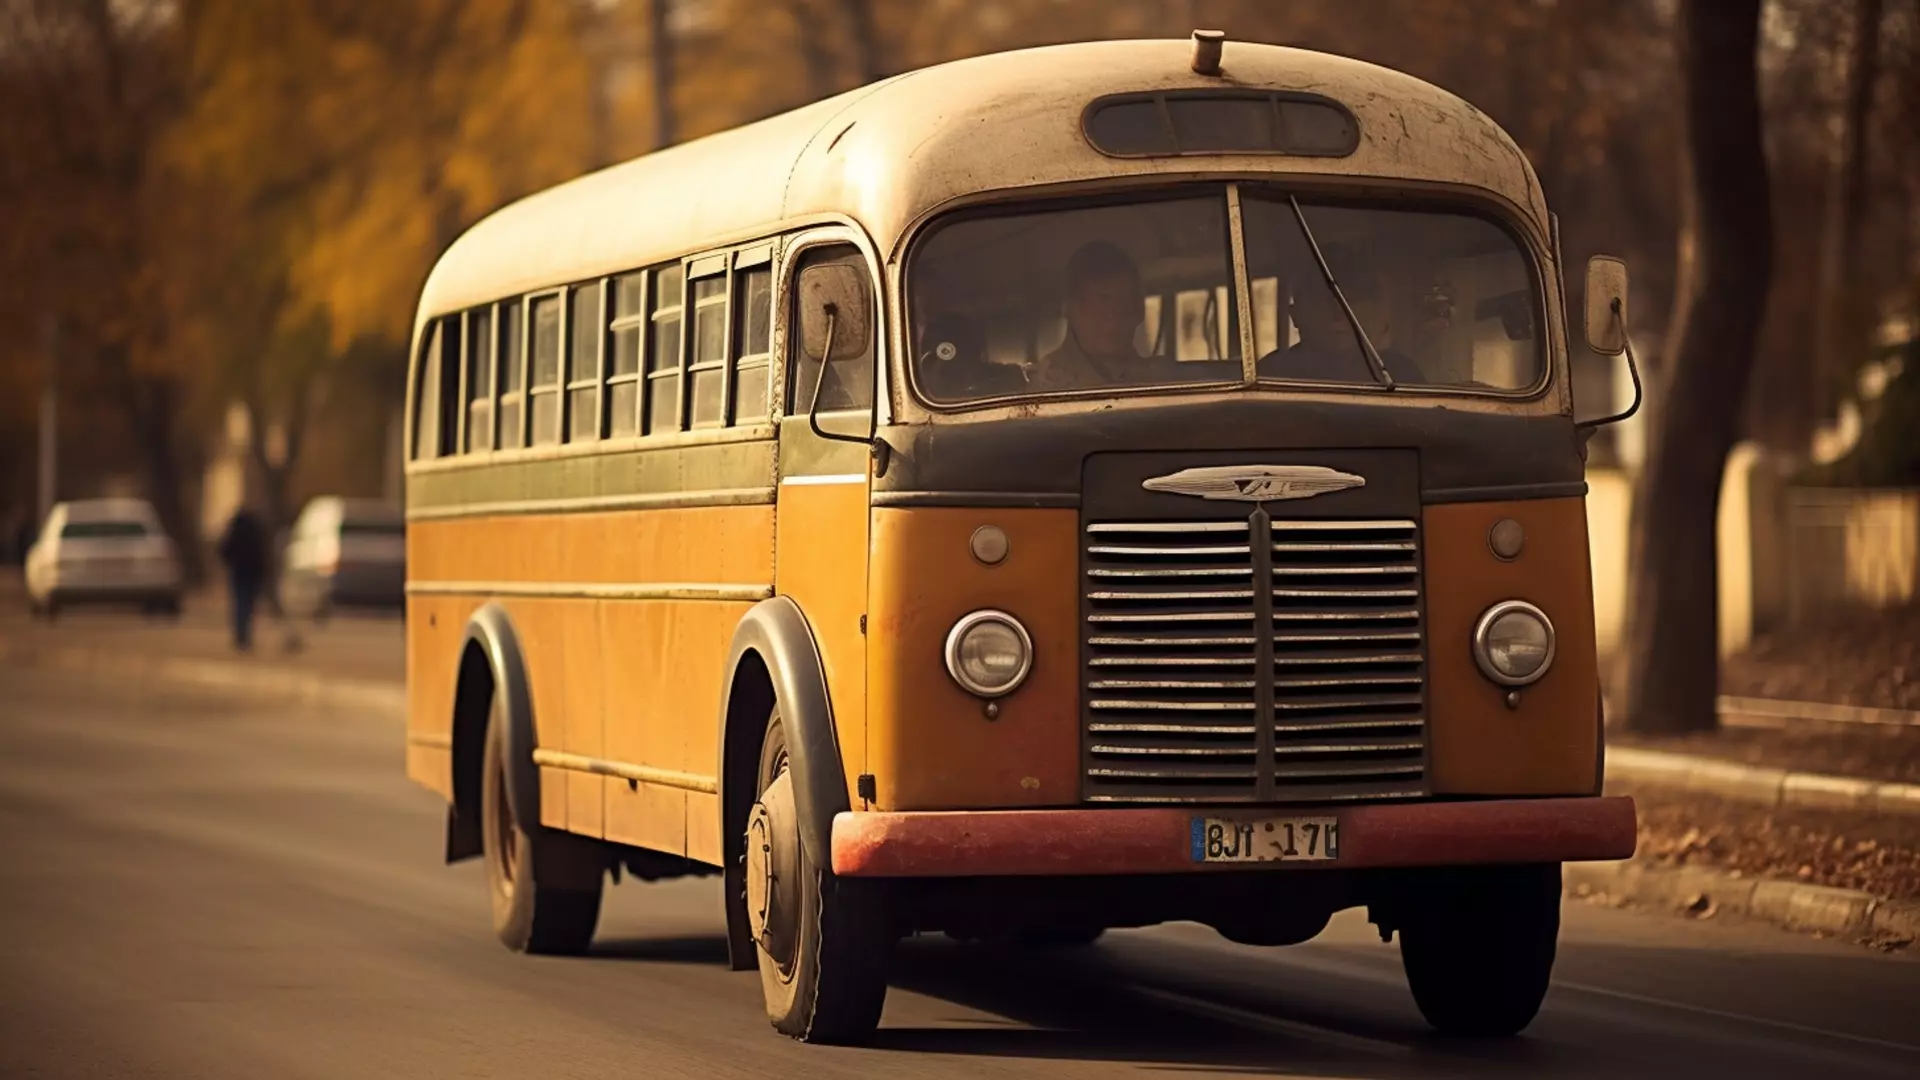 Автобусы из Ростова-на-Дону до «Меги» останутся без кондиционеров